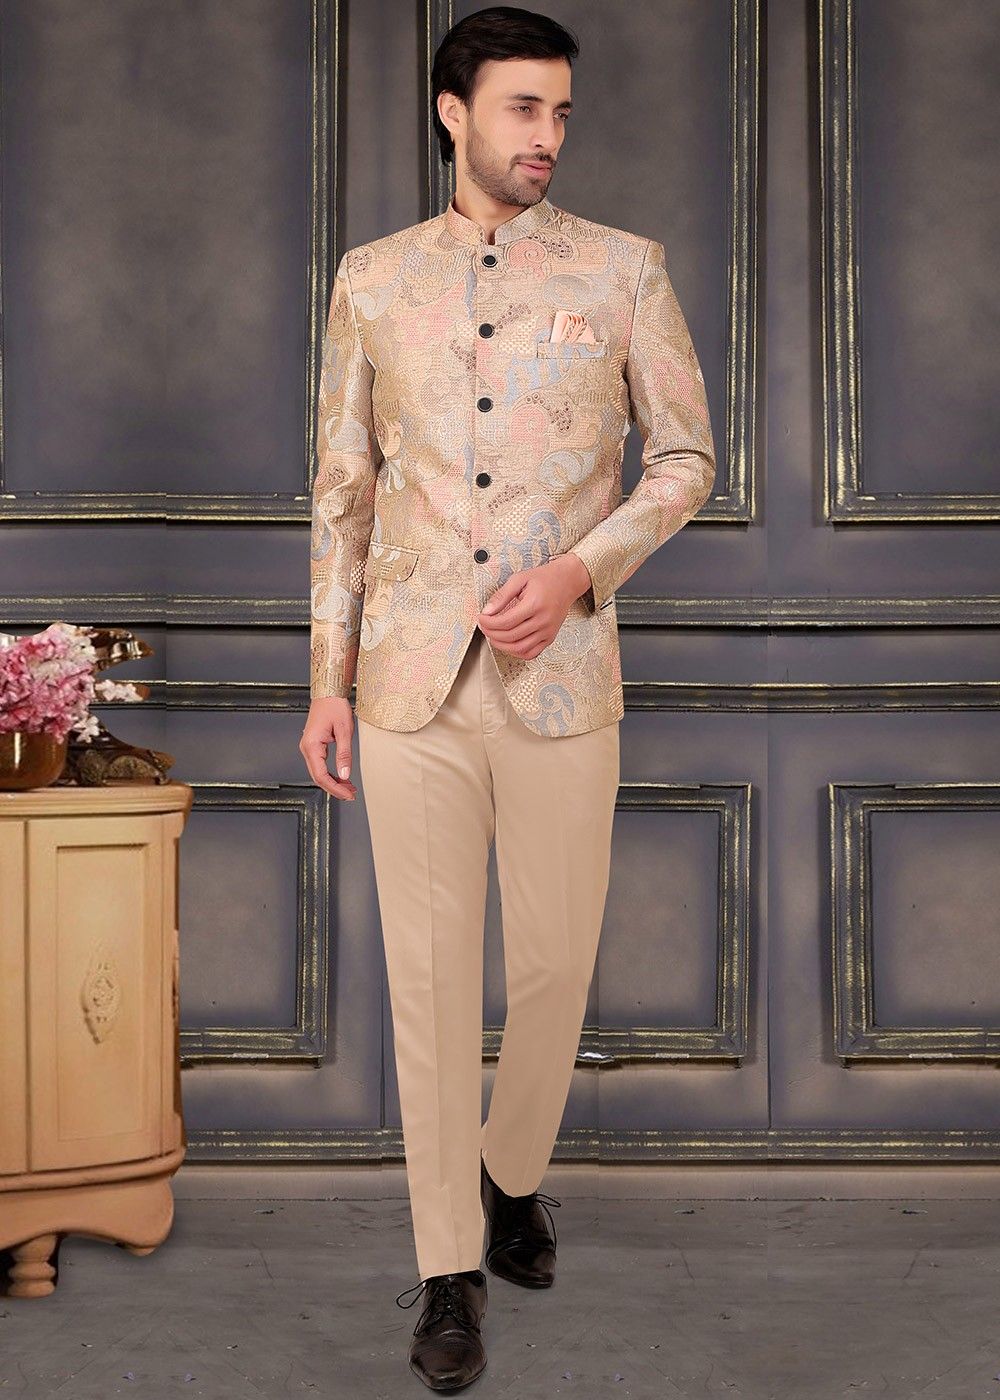 Jodhpuri Suit Royal Evergreen Partywear Dark Grey Sherwani for Men Designer  Coat Pant Jacket Blazer With Grey Pant - Etsy Finland